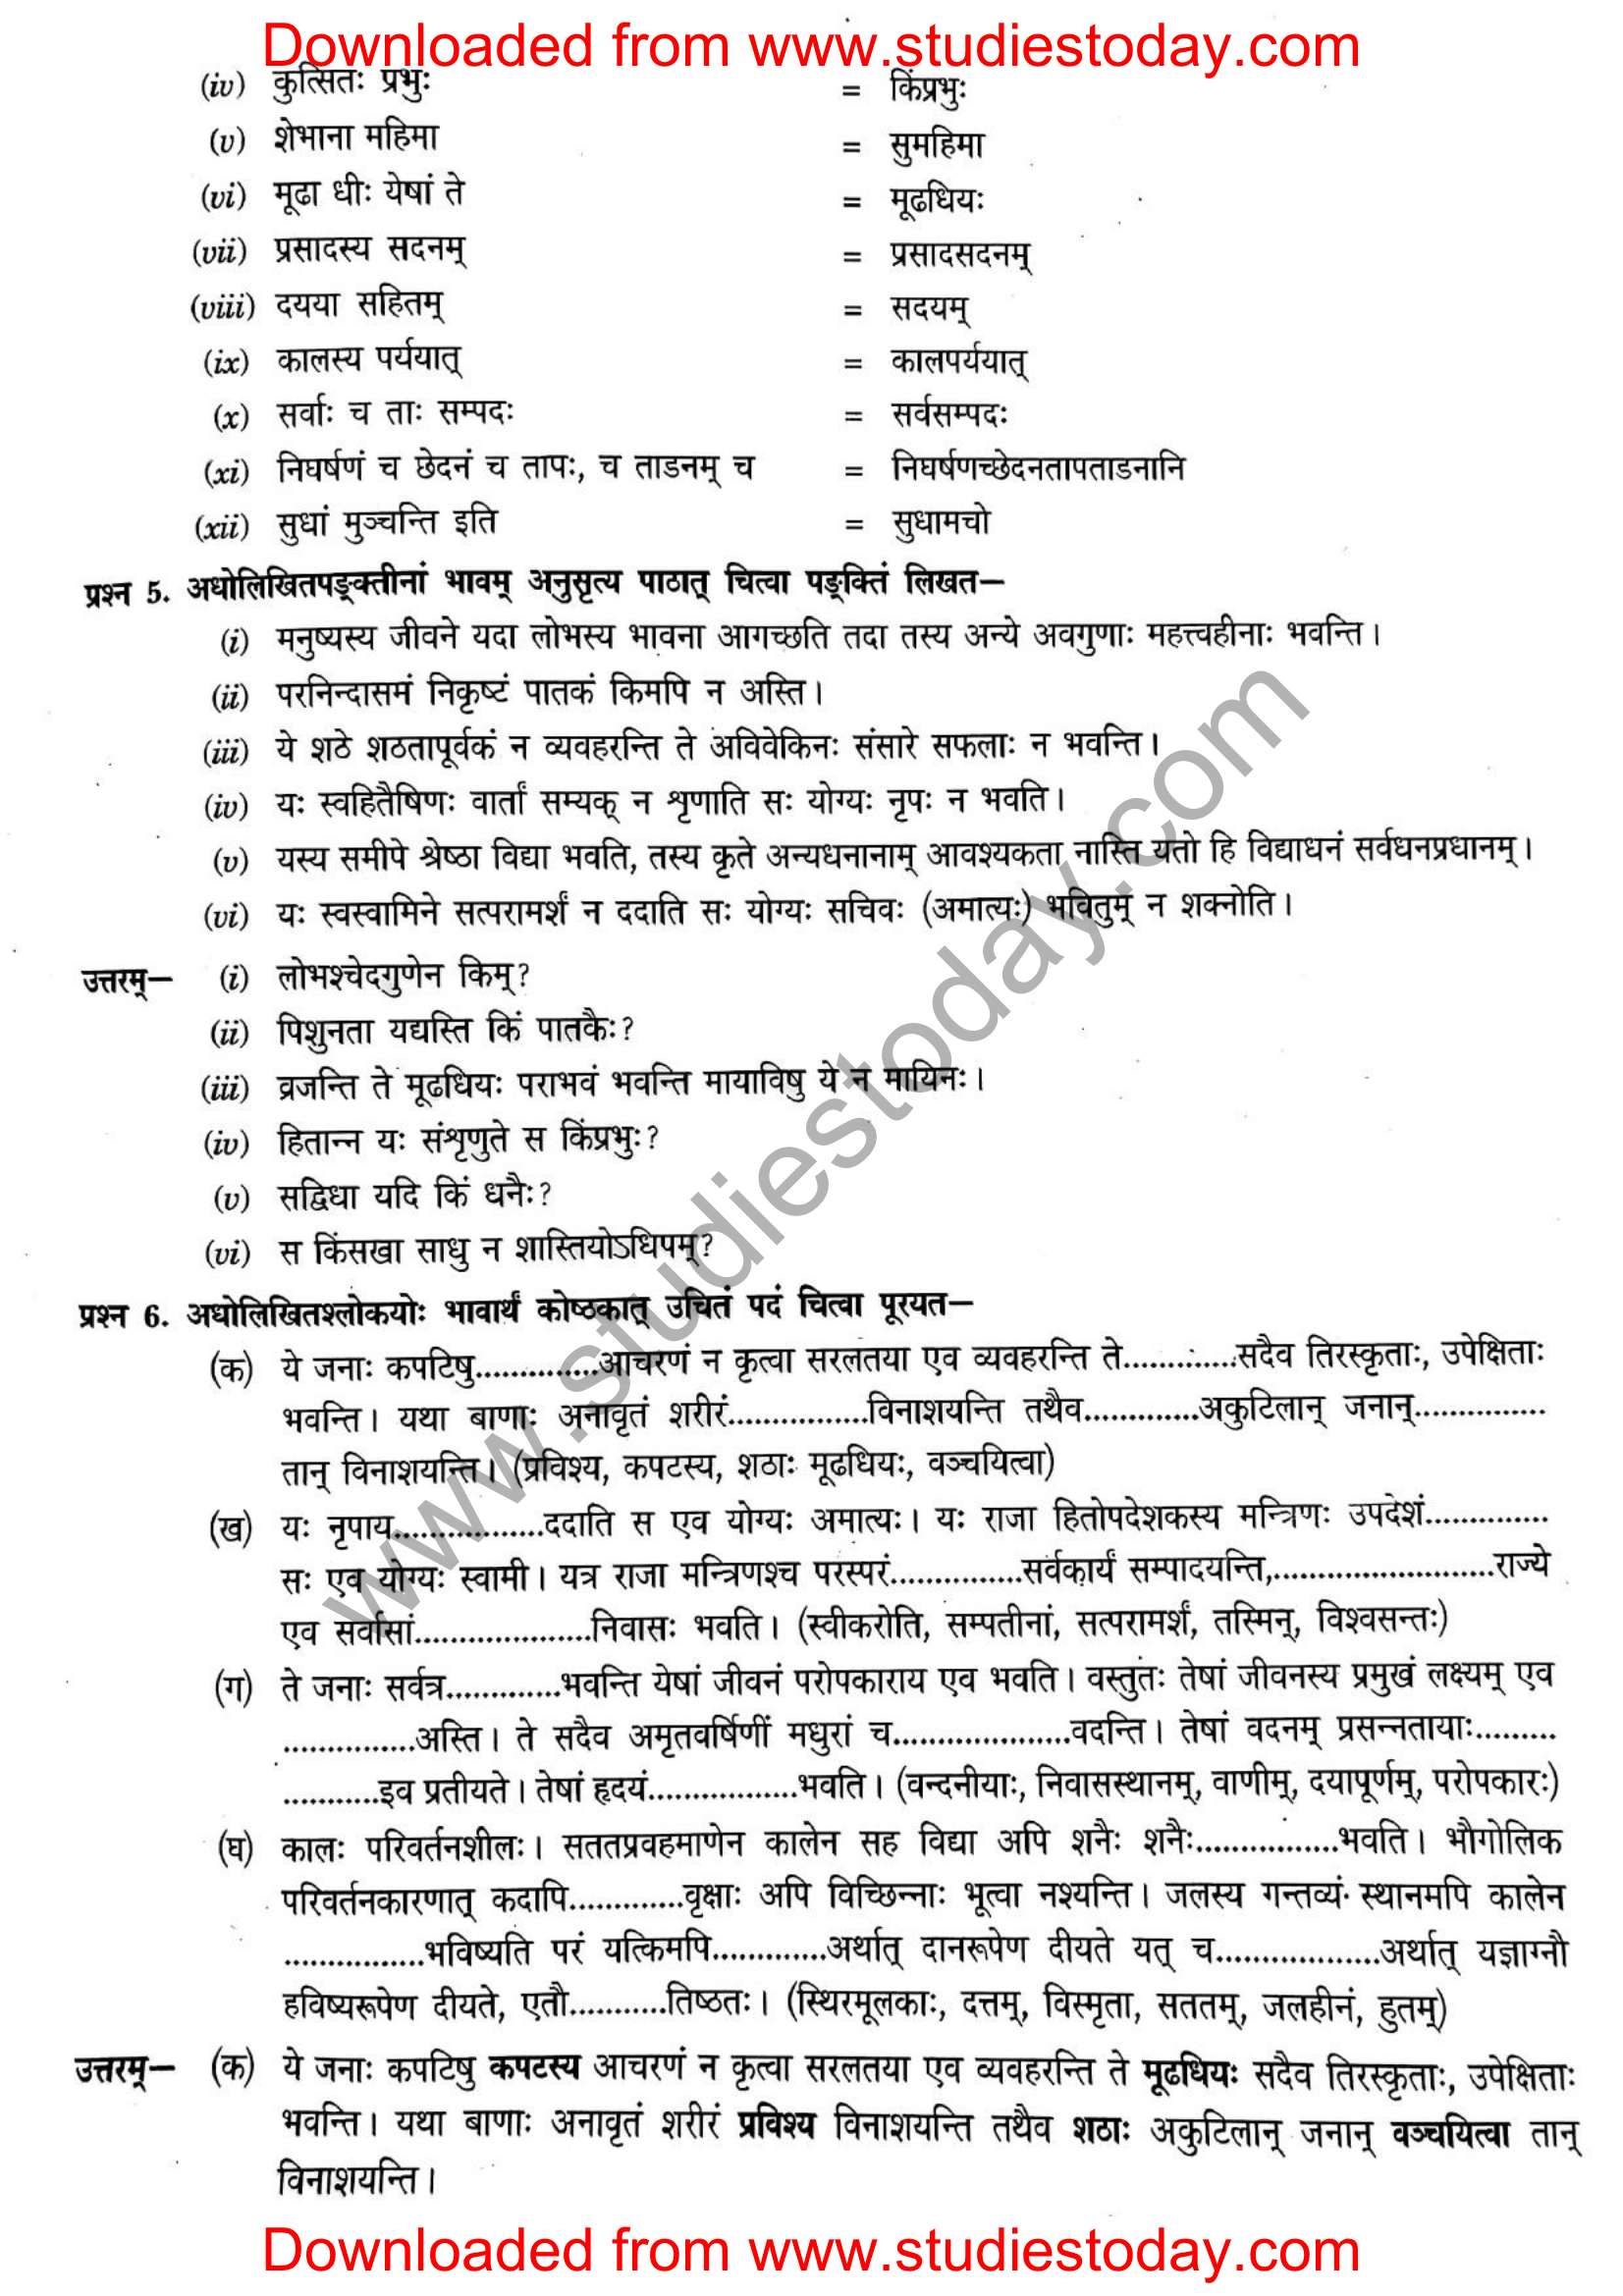 ncert-solutions-class-12-sanskrit-ritikia-chapter-6-08